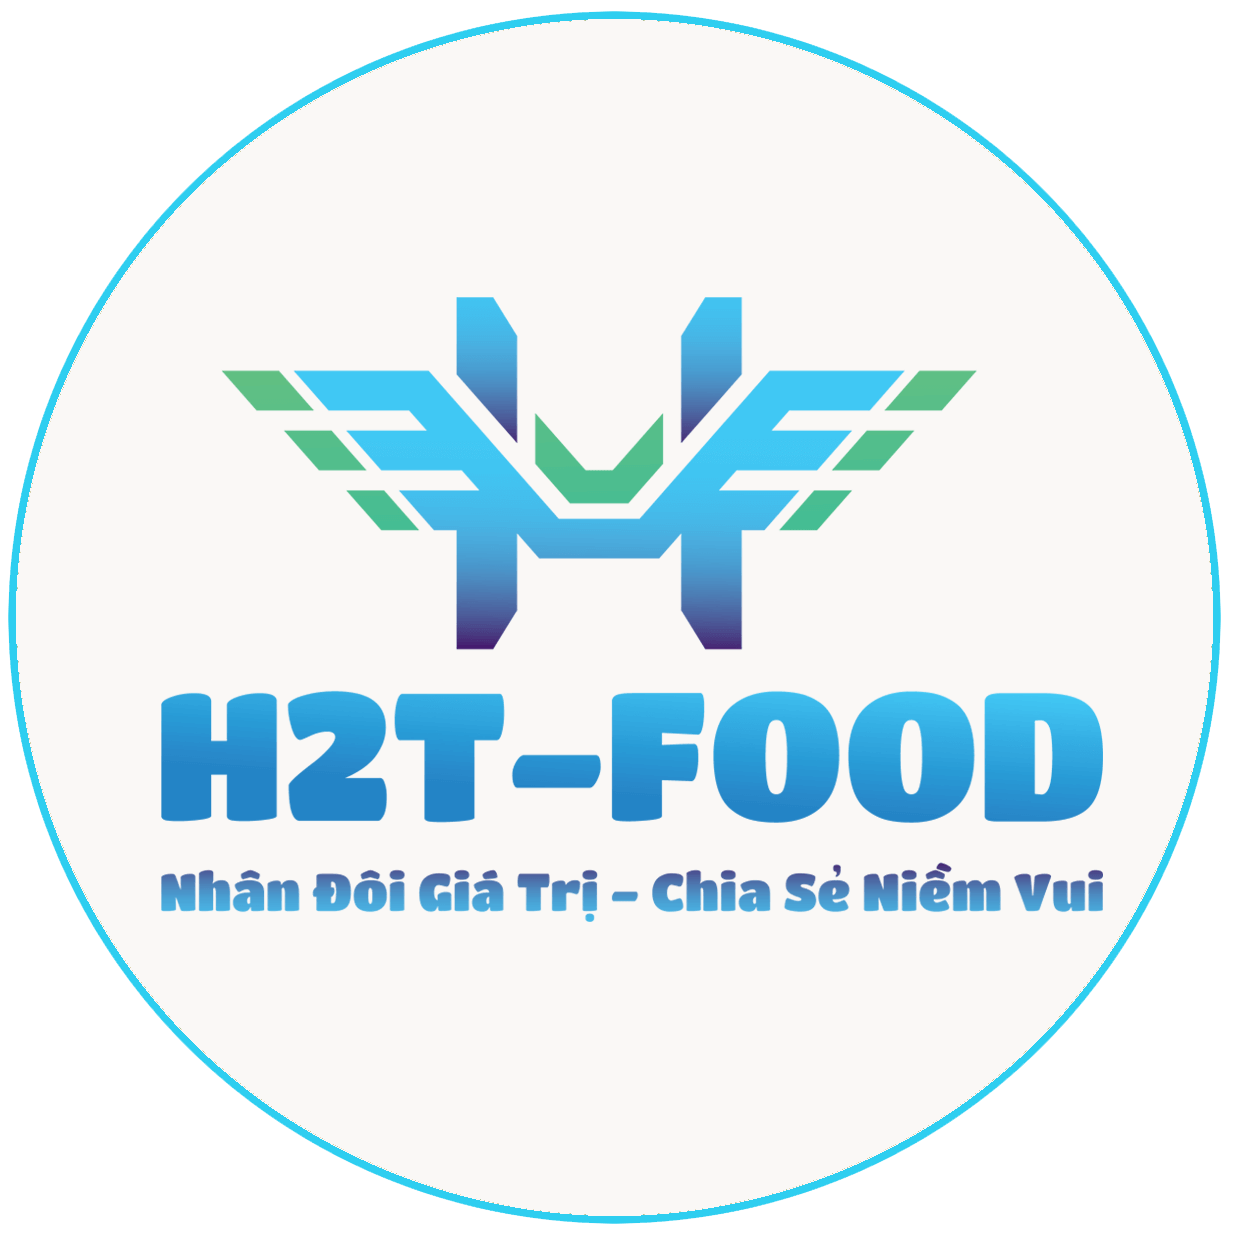 H2T FOOD – Cung cấp thực phẩm nhập khẩu